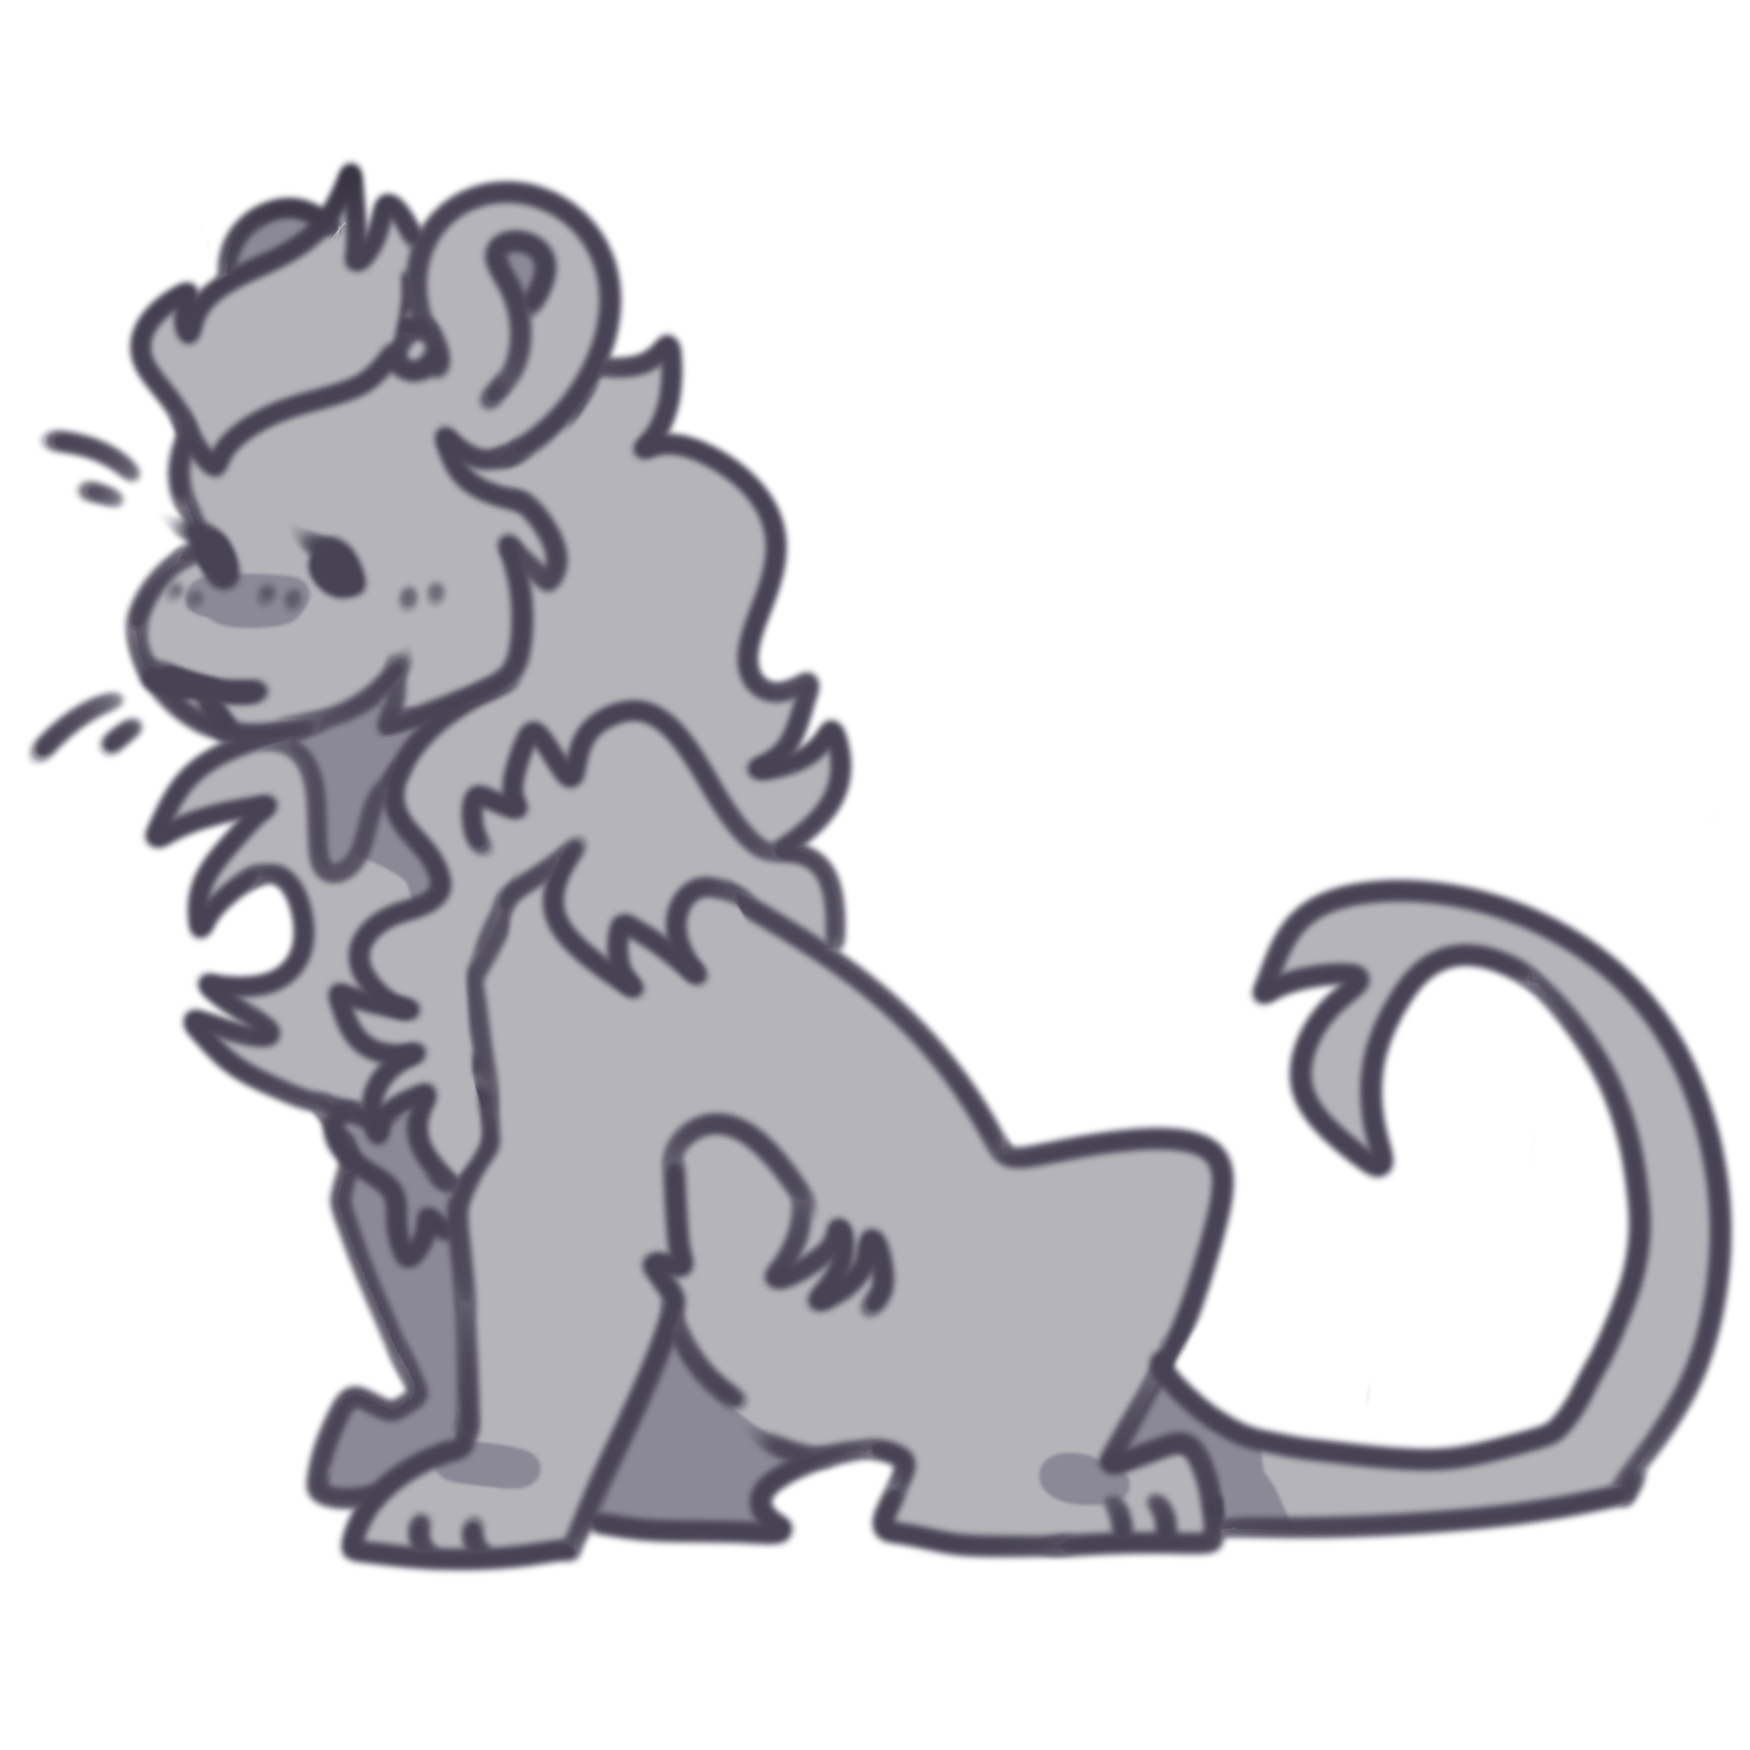 base 1a: a male lion sitting